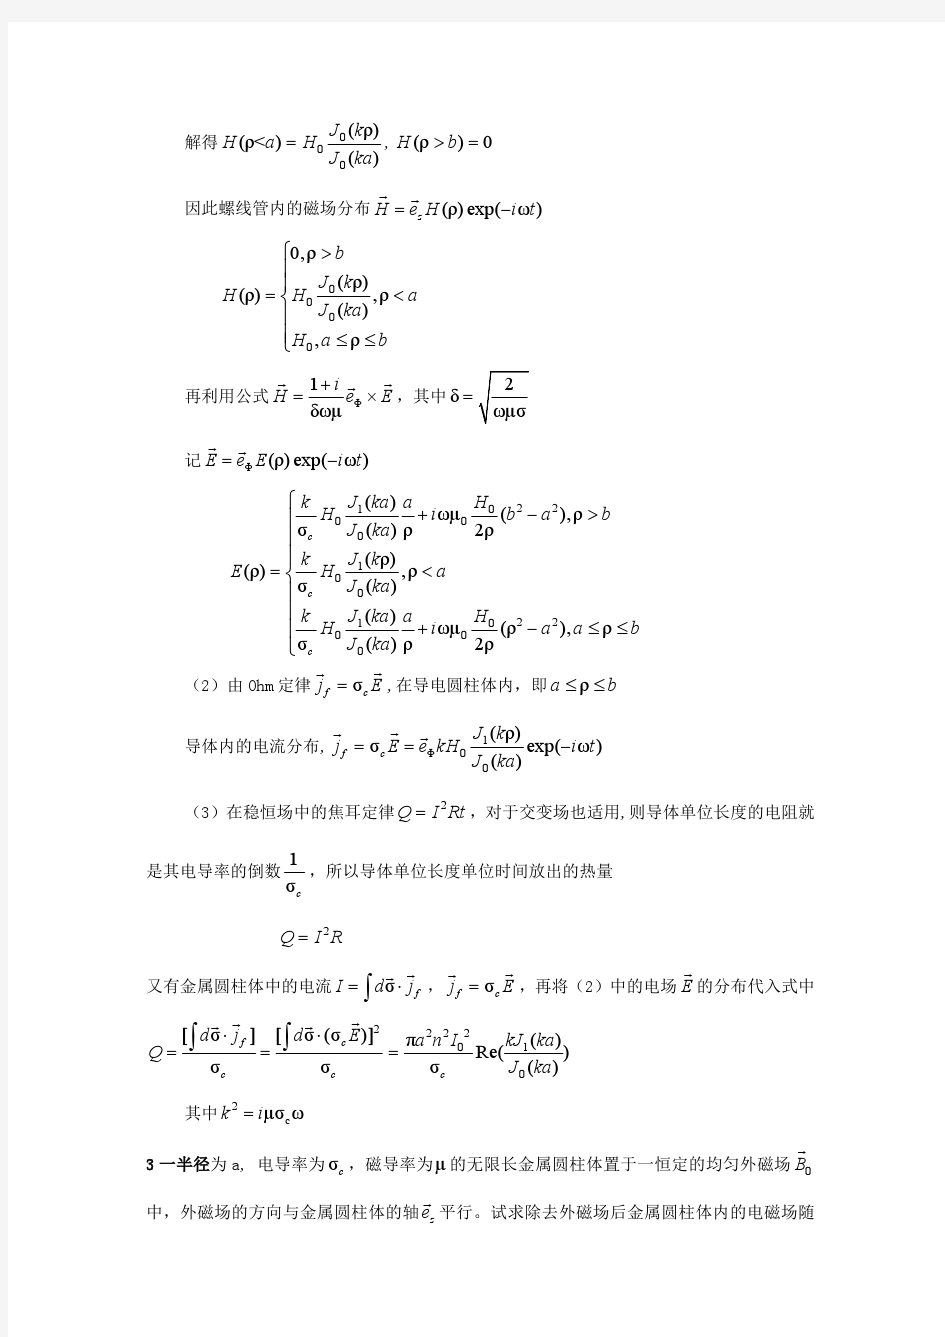 武汉大学电动力学 刘觉平第6章习题答案